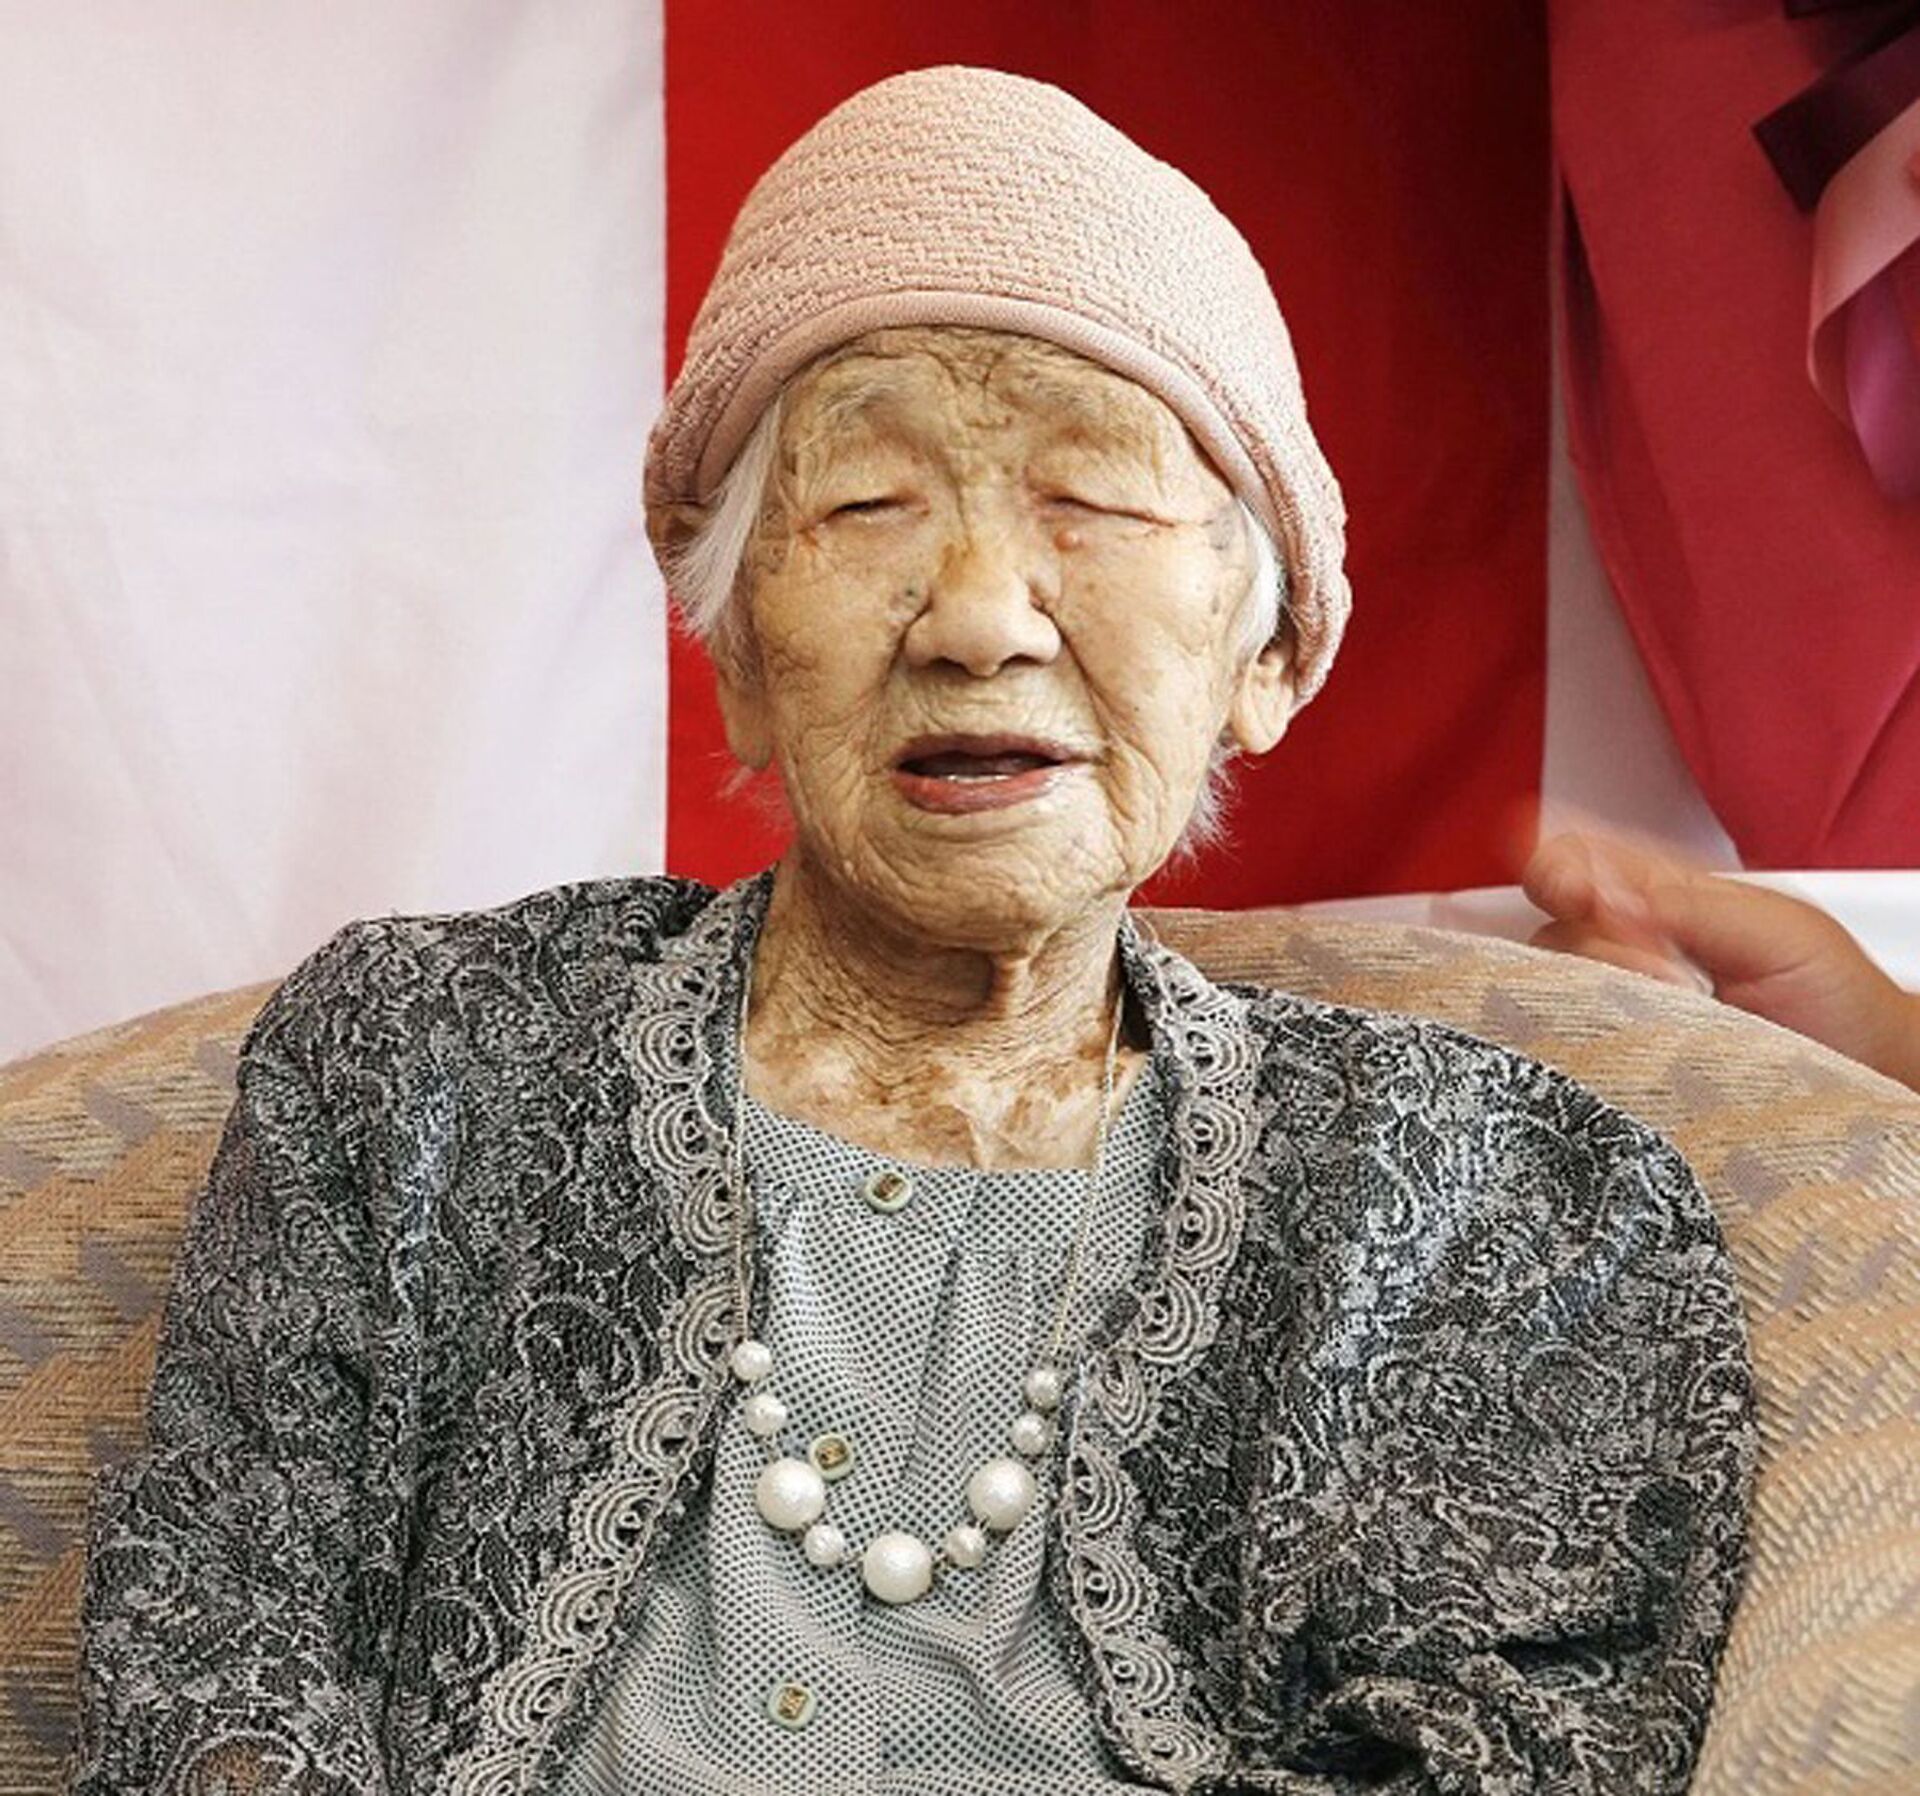 Bà cụ lớn tuổi nhất thế giới - bà Kane Tanaka đã đón sinh nhật lần thứ 118 trong viện dưỡng lão ở Fukuoka, Nhật Bản - Sputnik Việt Nam, 1920, 05.10.2021